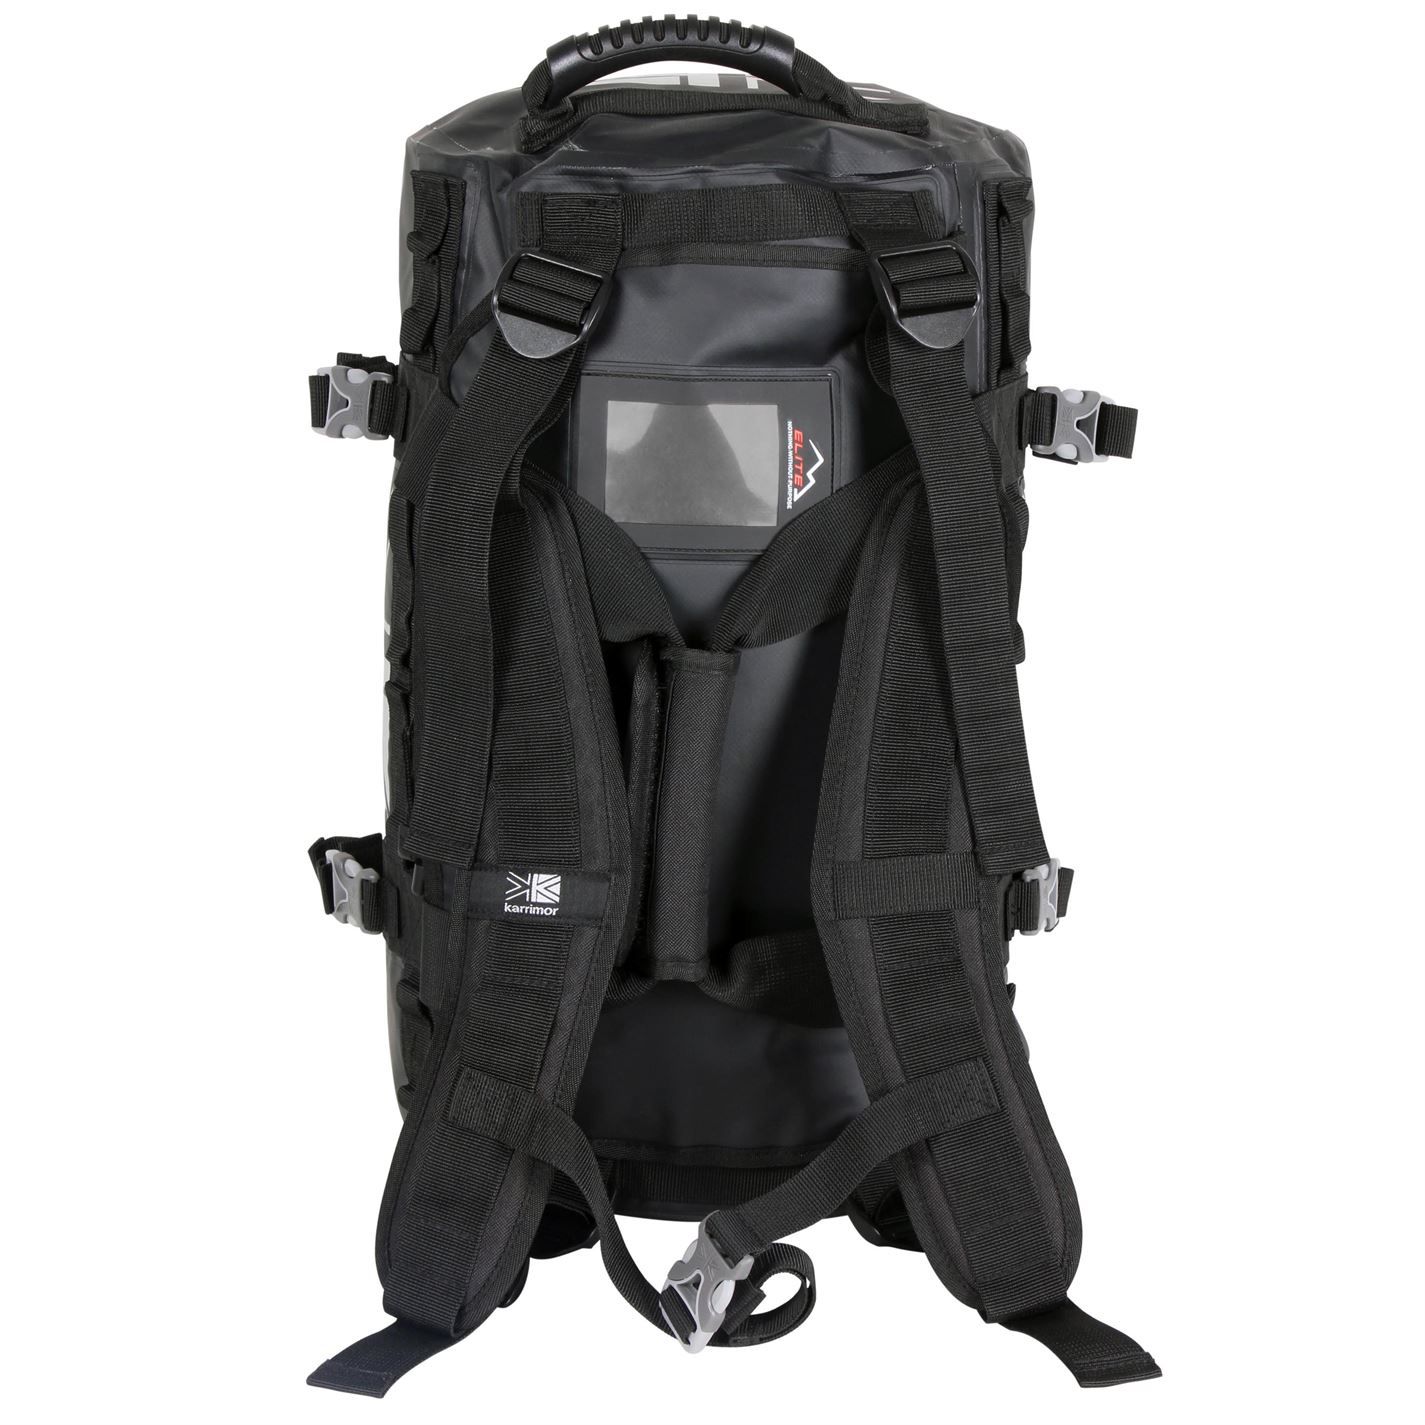 Karrimor 40L Duffle Bag Adjustable Shoulder Straps Padded Carry Handle Zipped